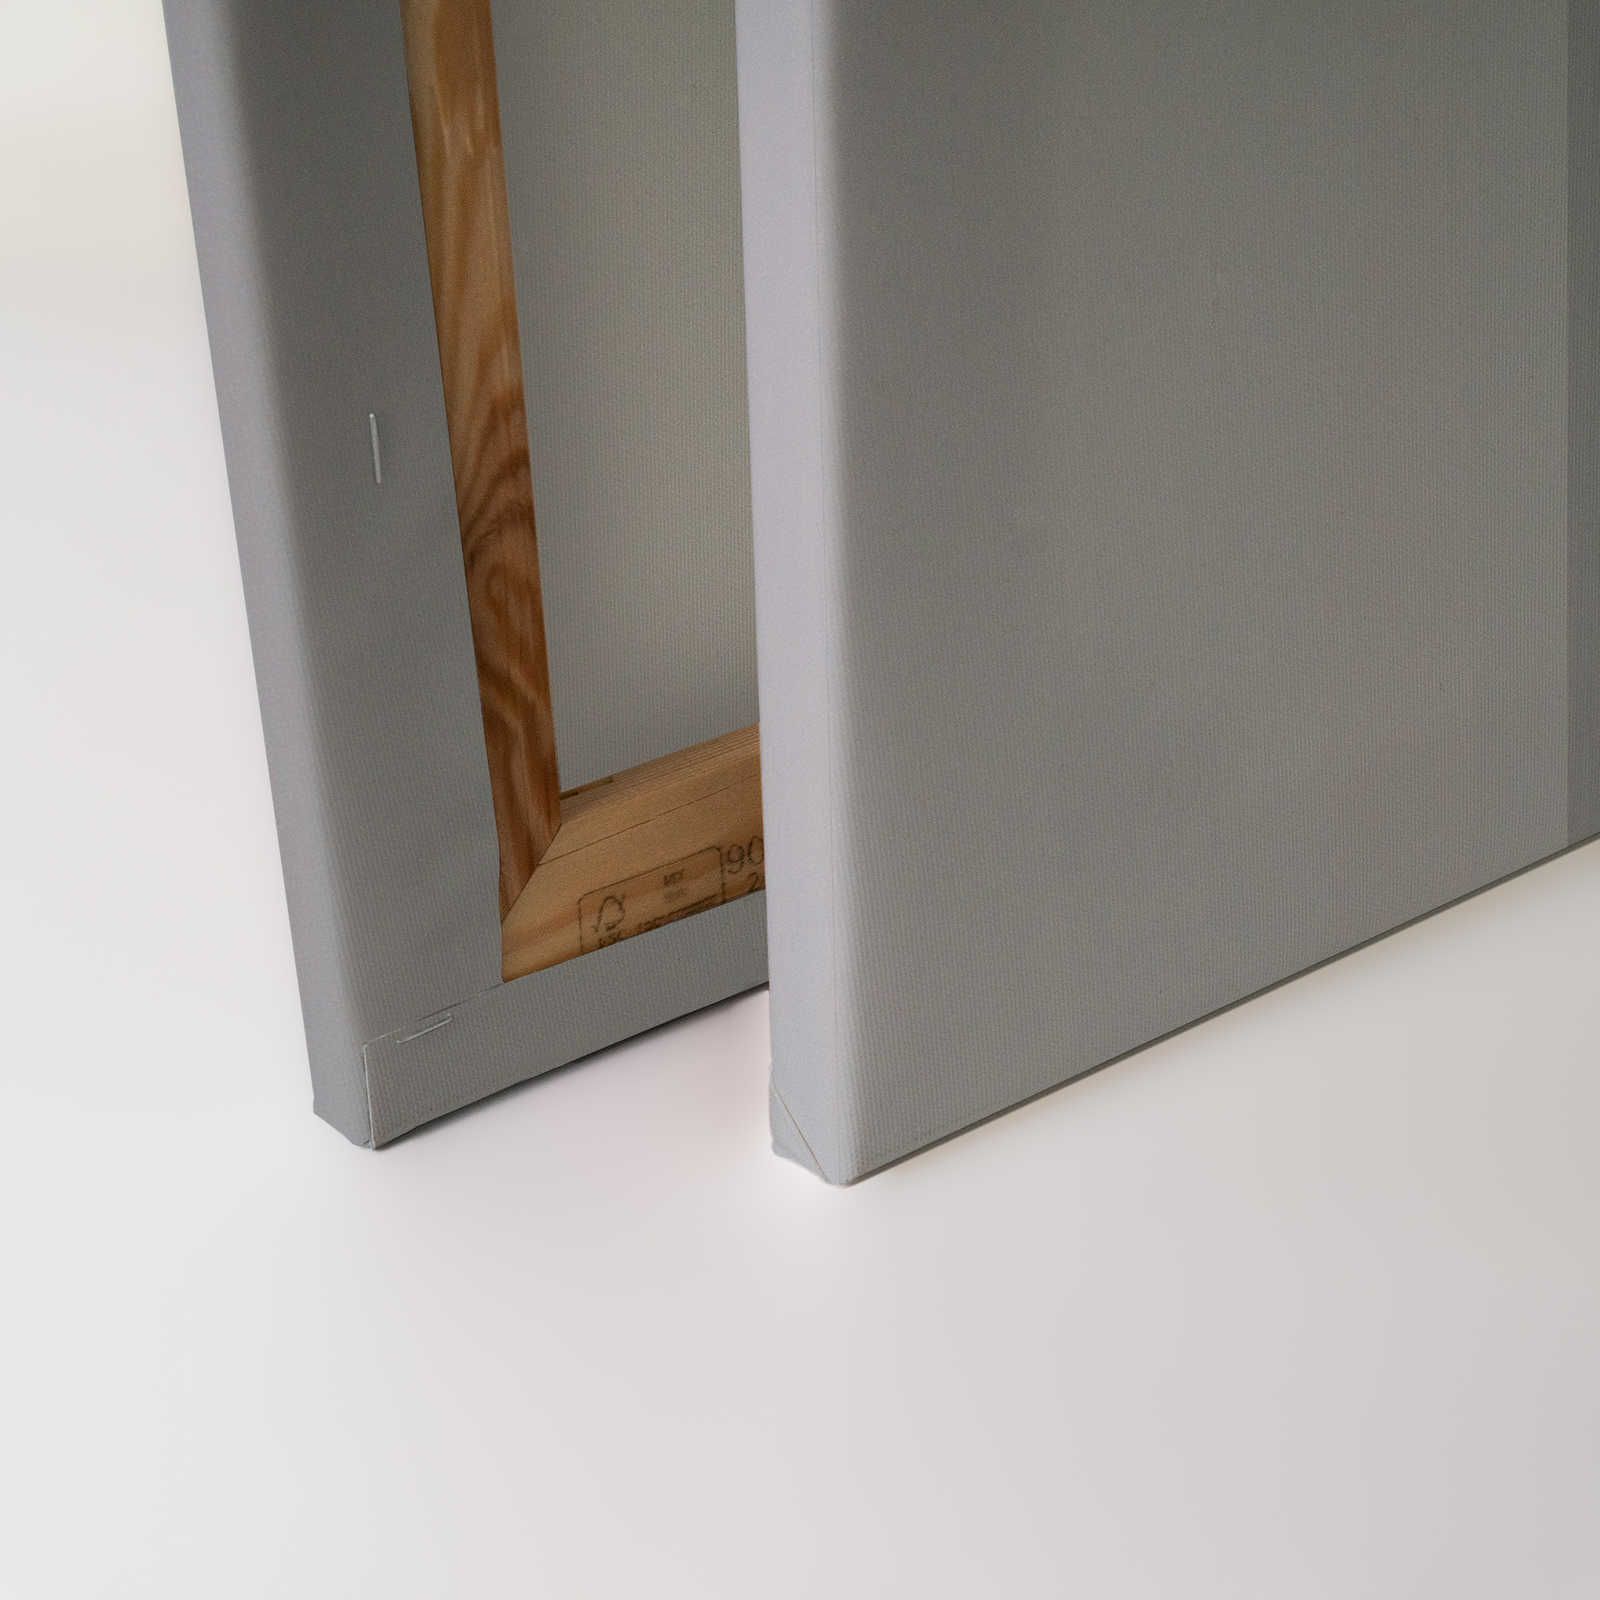             Behind the Wall 1 - Toile 3D gris acier au design minimaliste - 1,20 m x 0,80 m
        